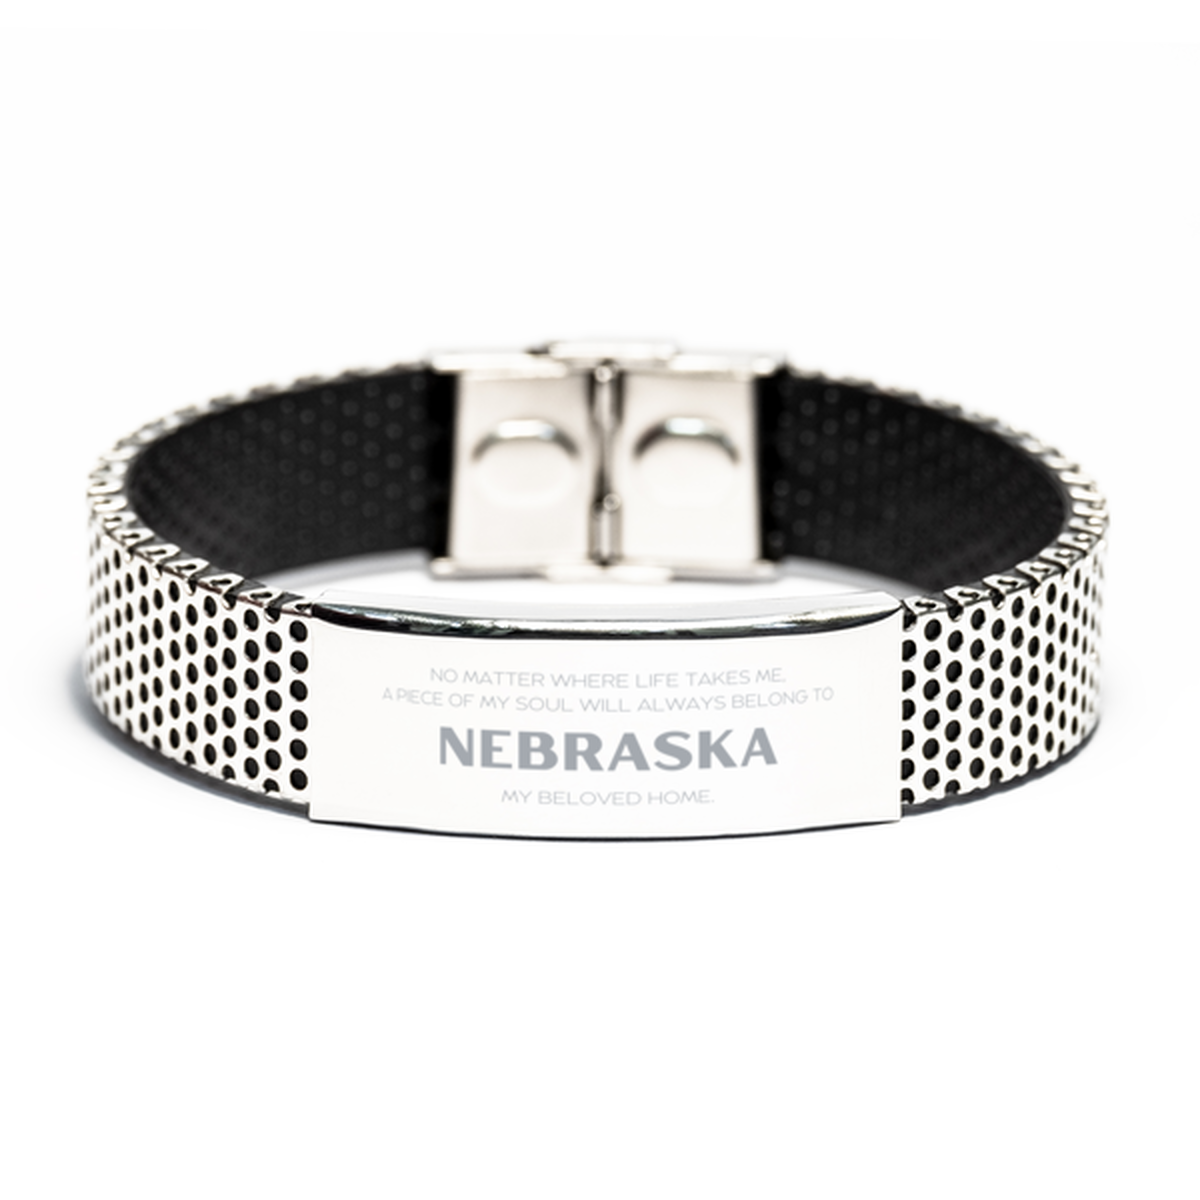 Love Nebraska State Gifts, My soul will always belong to Nebraska, Proud Stainless Steel Bracelet, Birthday Unique Gifts For Nebraska Men, Women, Friends